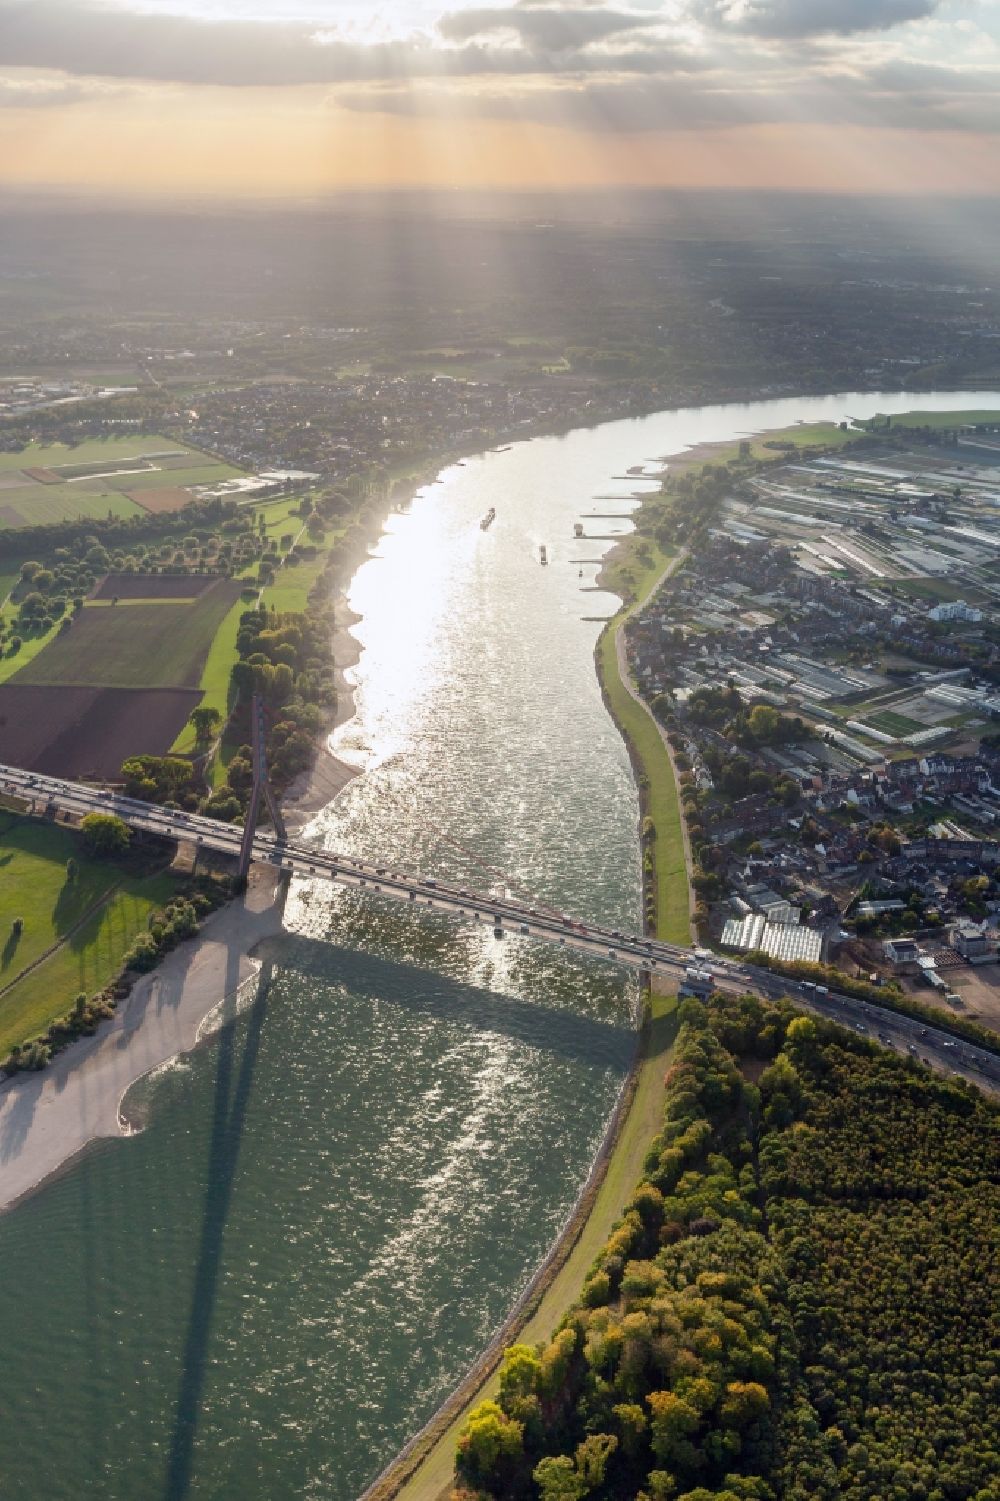 Düsseldorf aus der Vogelperspektive: Fleher Brücke zwischen Düsseldorf und Neuss im Bundesland Nordrhein-Westfalen